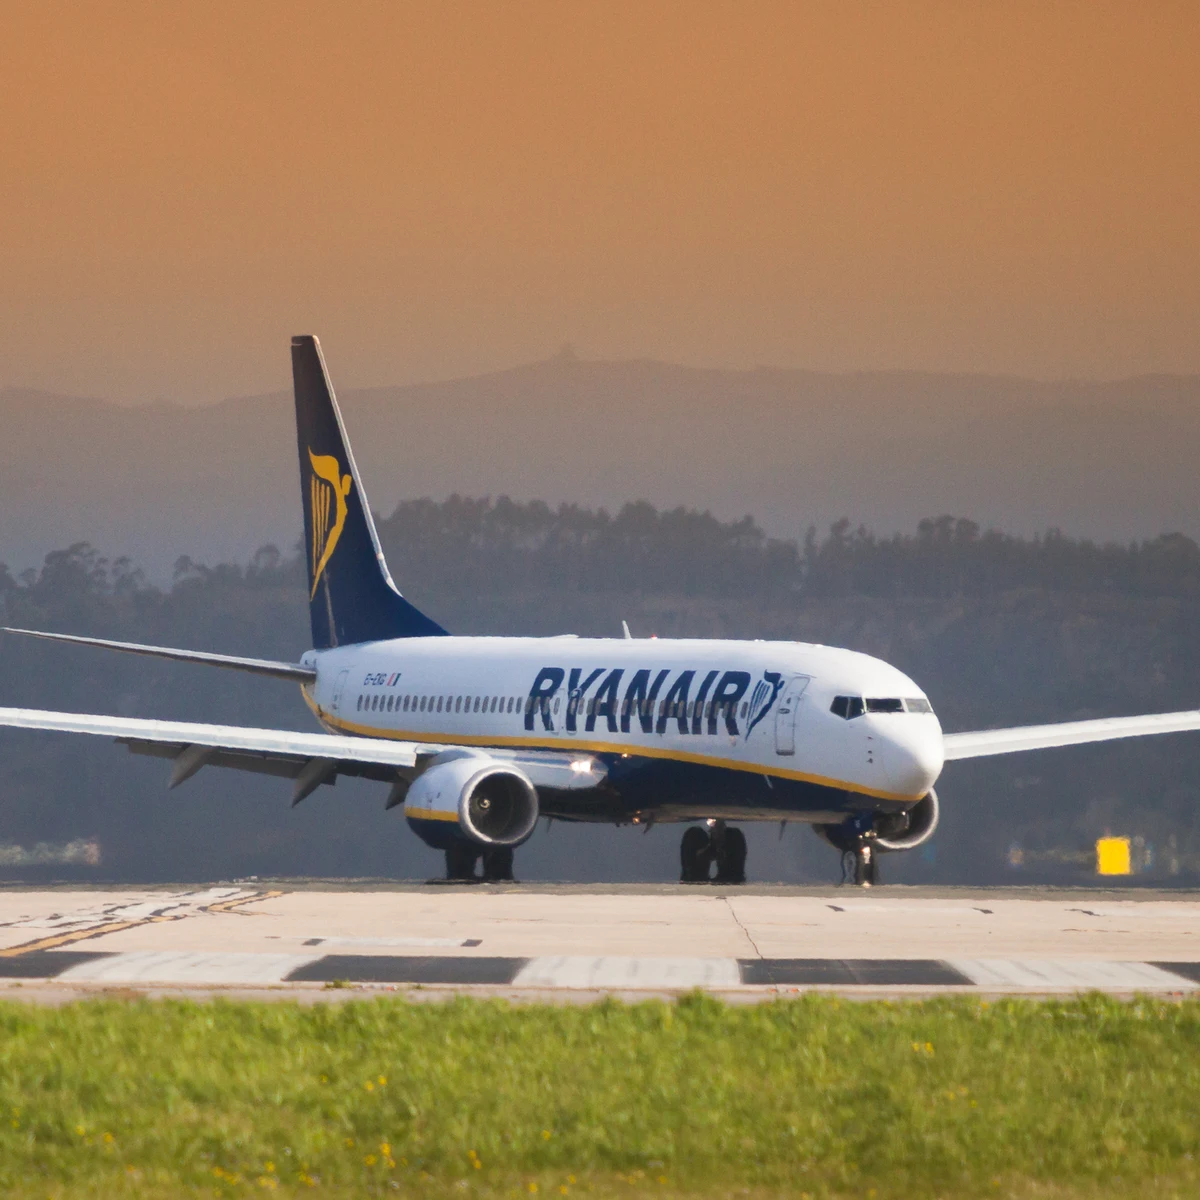 Ryanair ✓✓ ¿Equipaje permitido en cabina y bodega en 2024? +